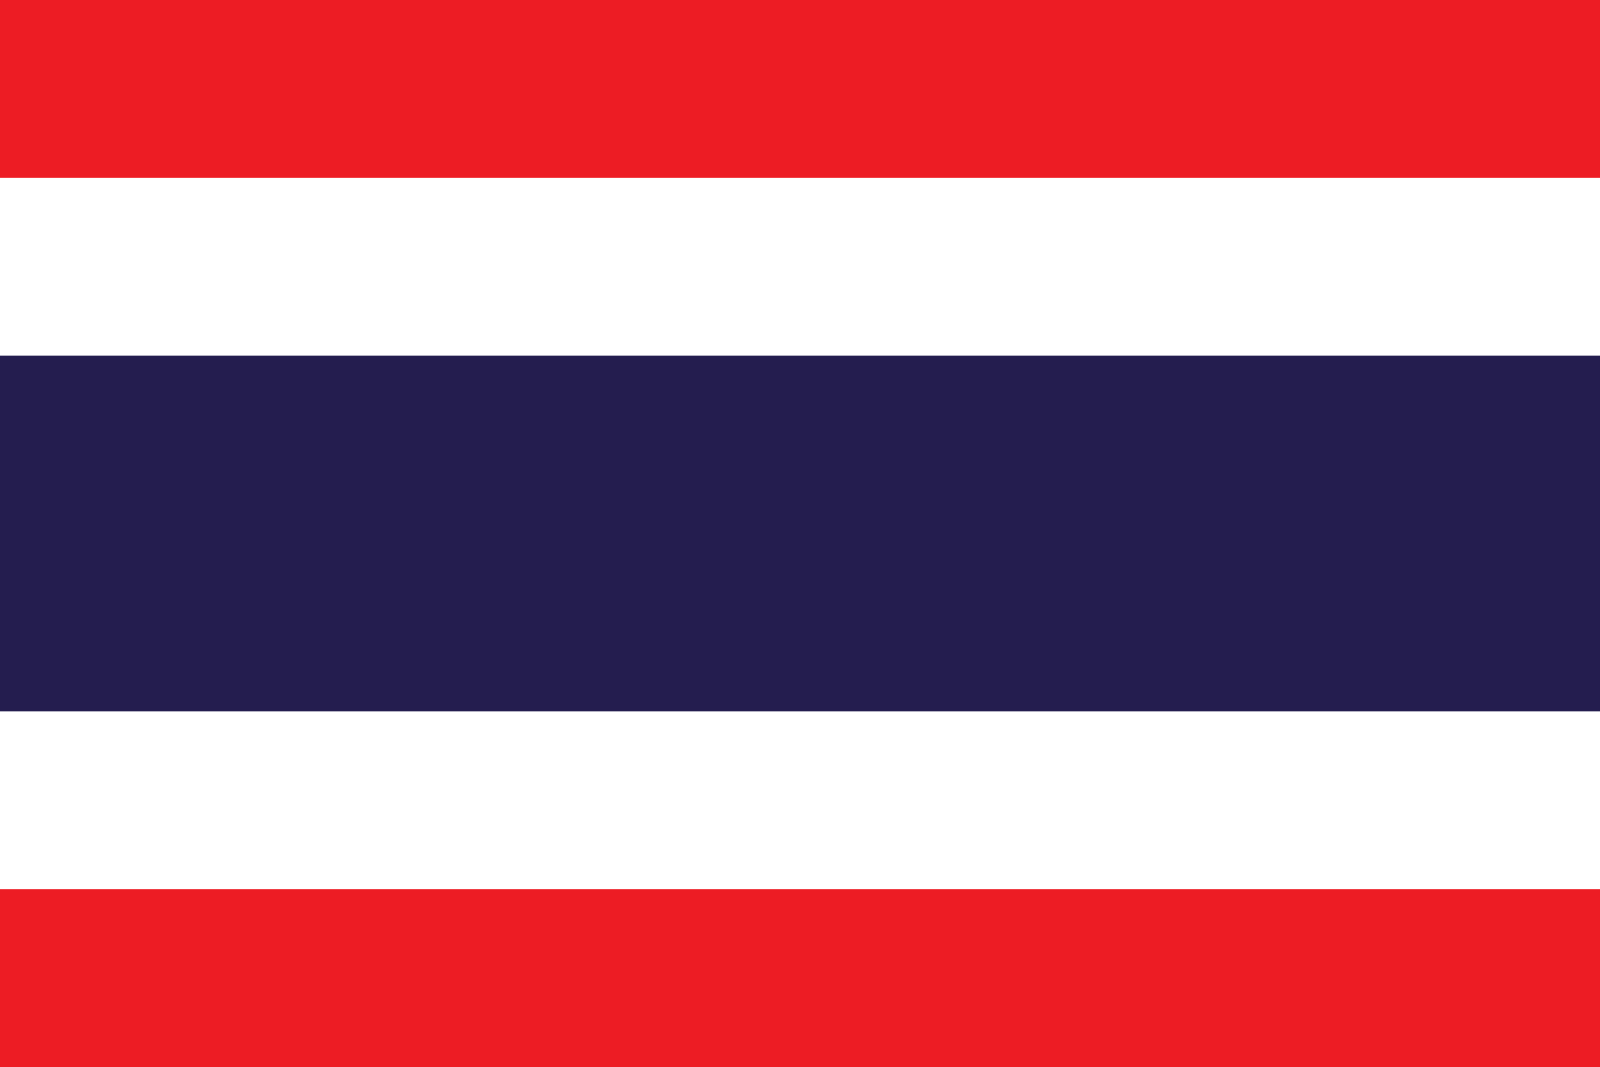 Bild der Staatsflagge Thailand - mit einer Auflösung von 1600x1067 - Ostasien